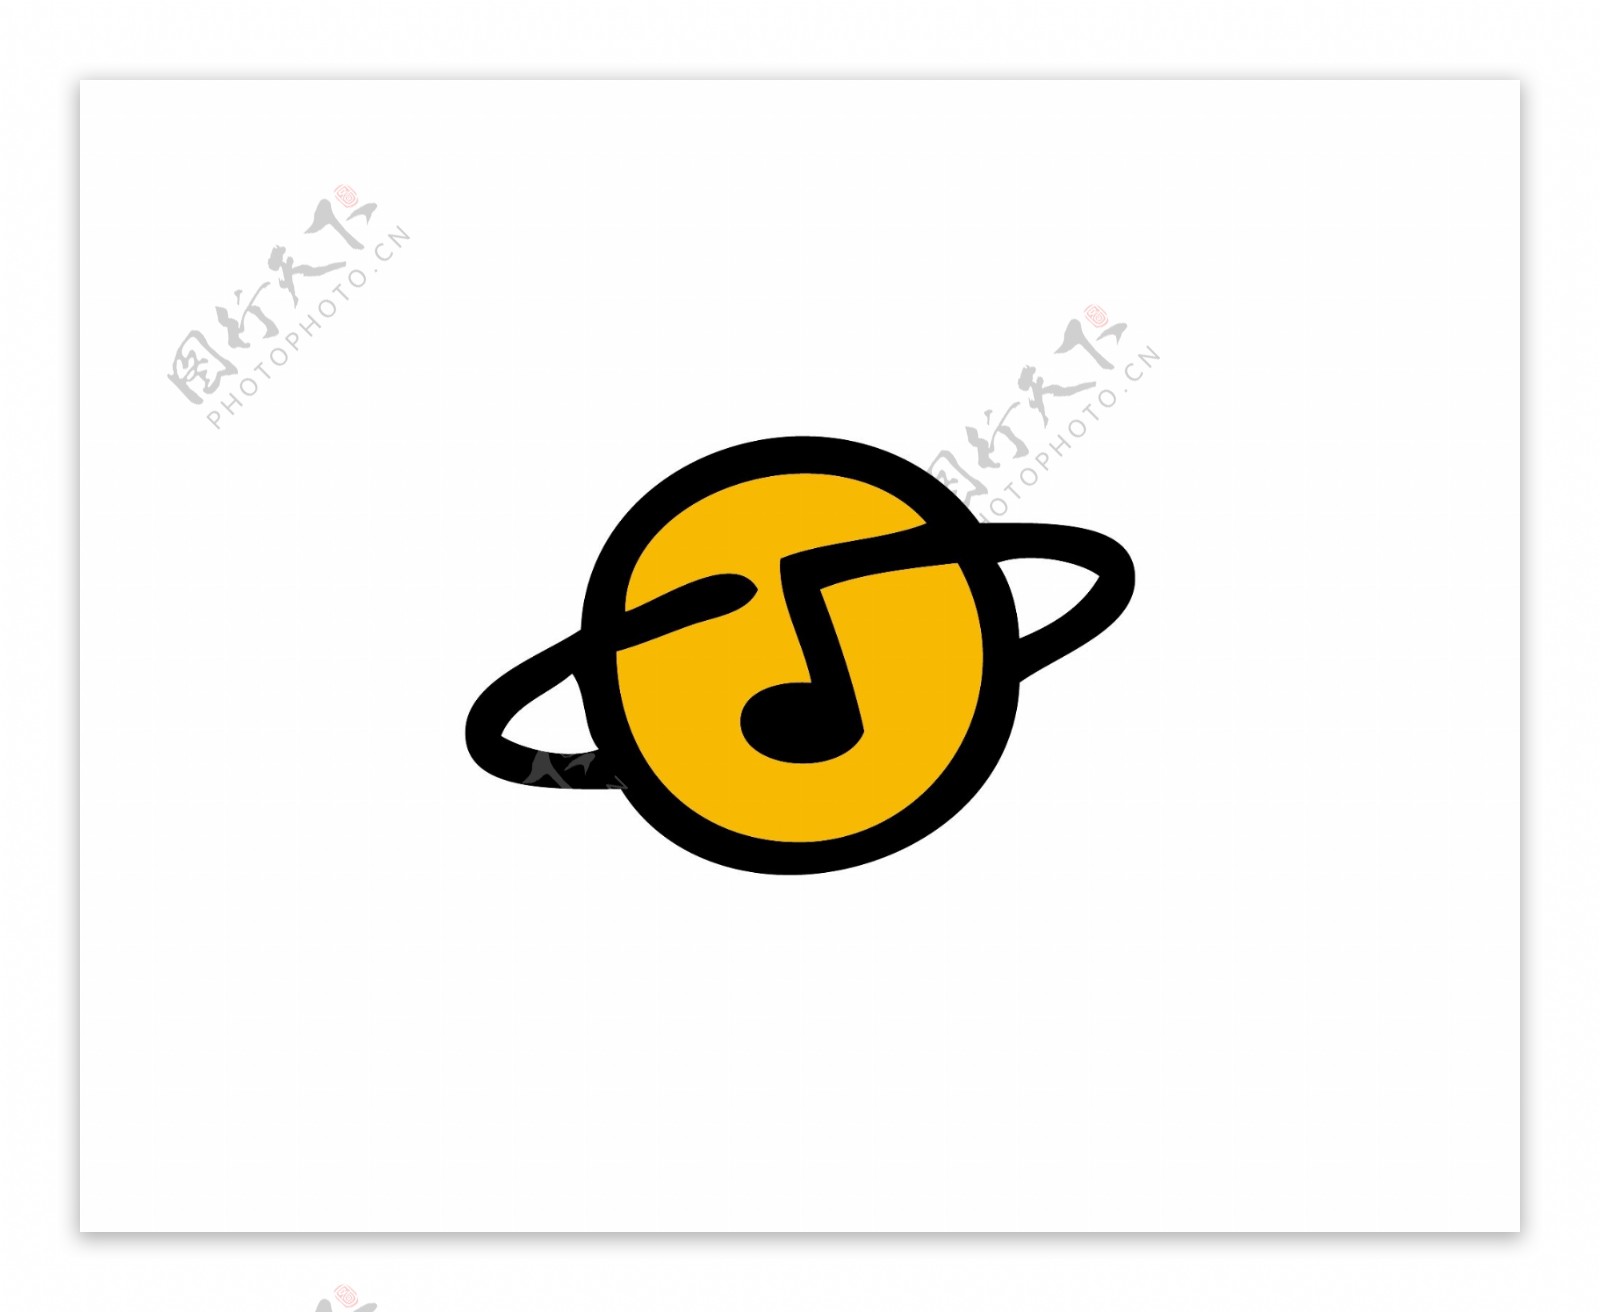 音乐星球logo